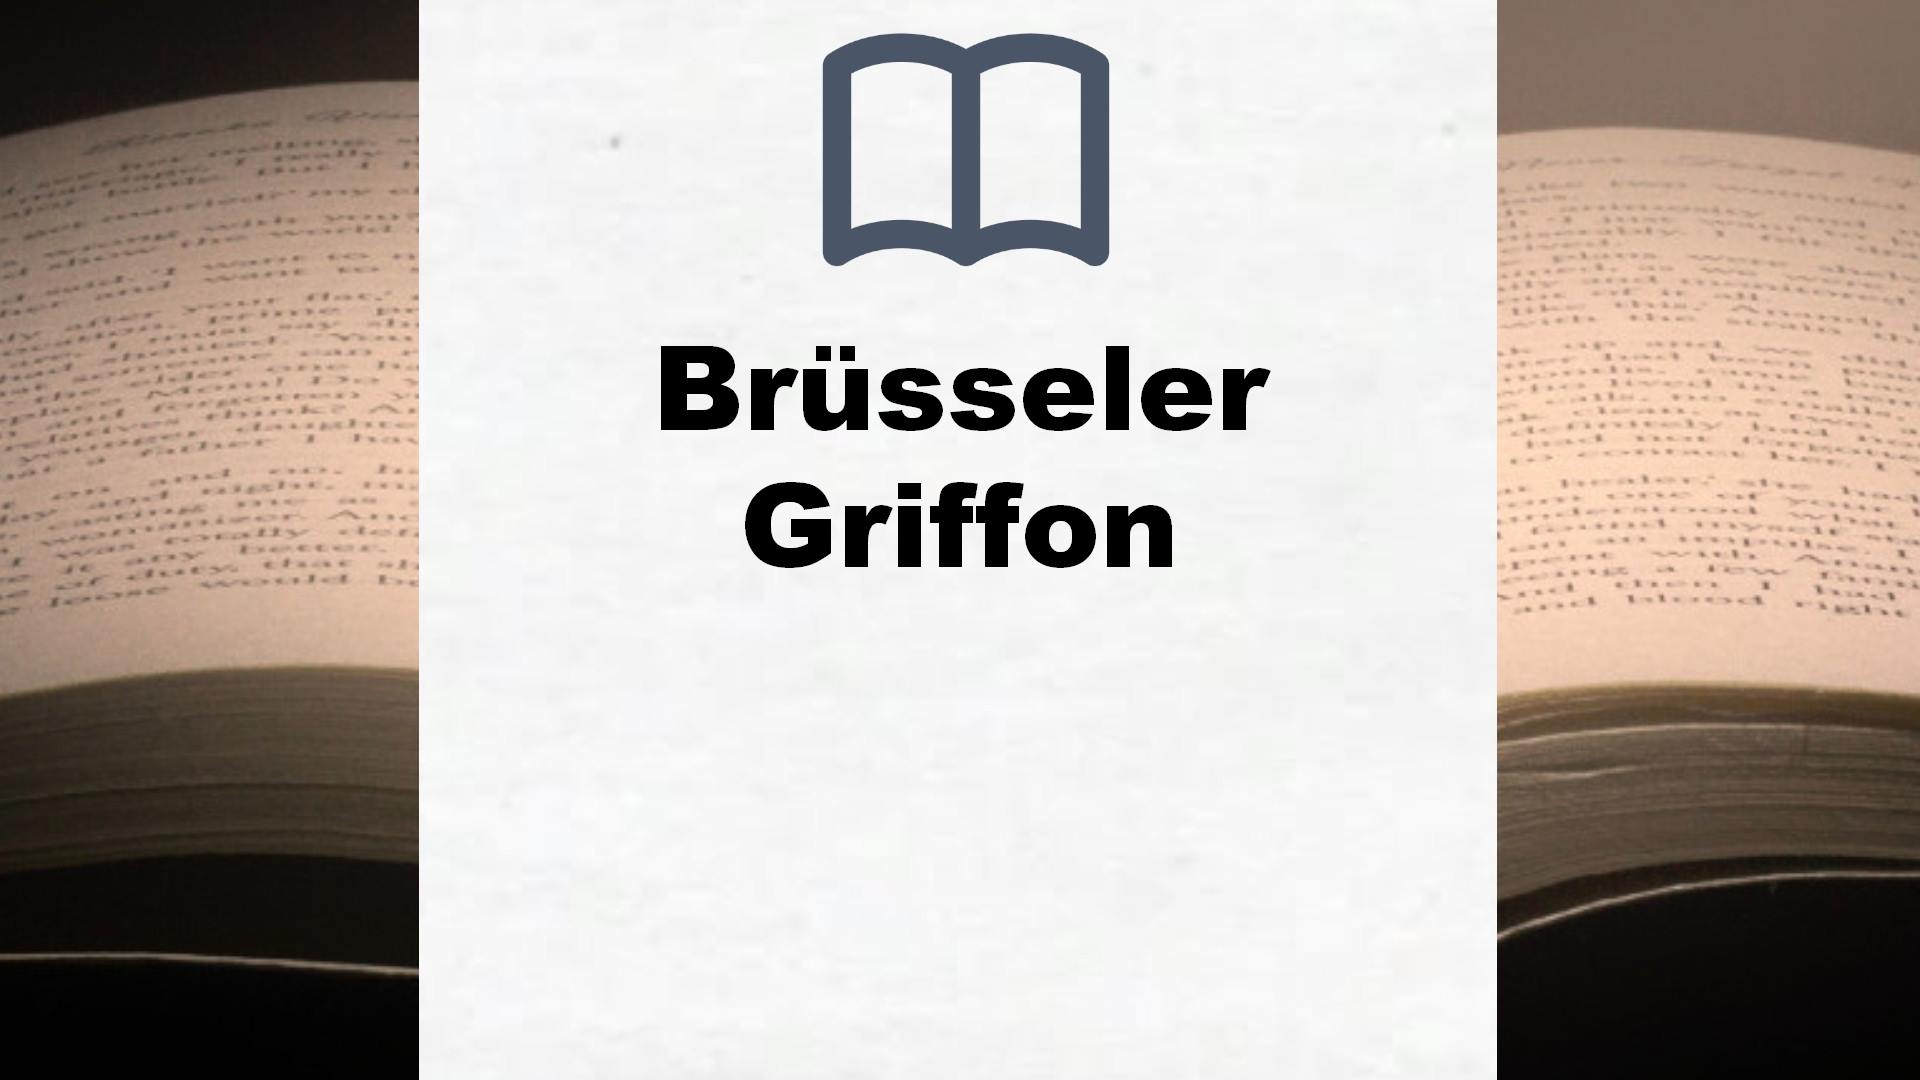 Bücher über Brüsseler Griffon